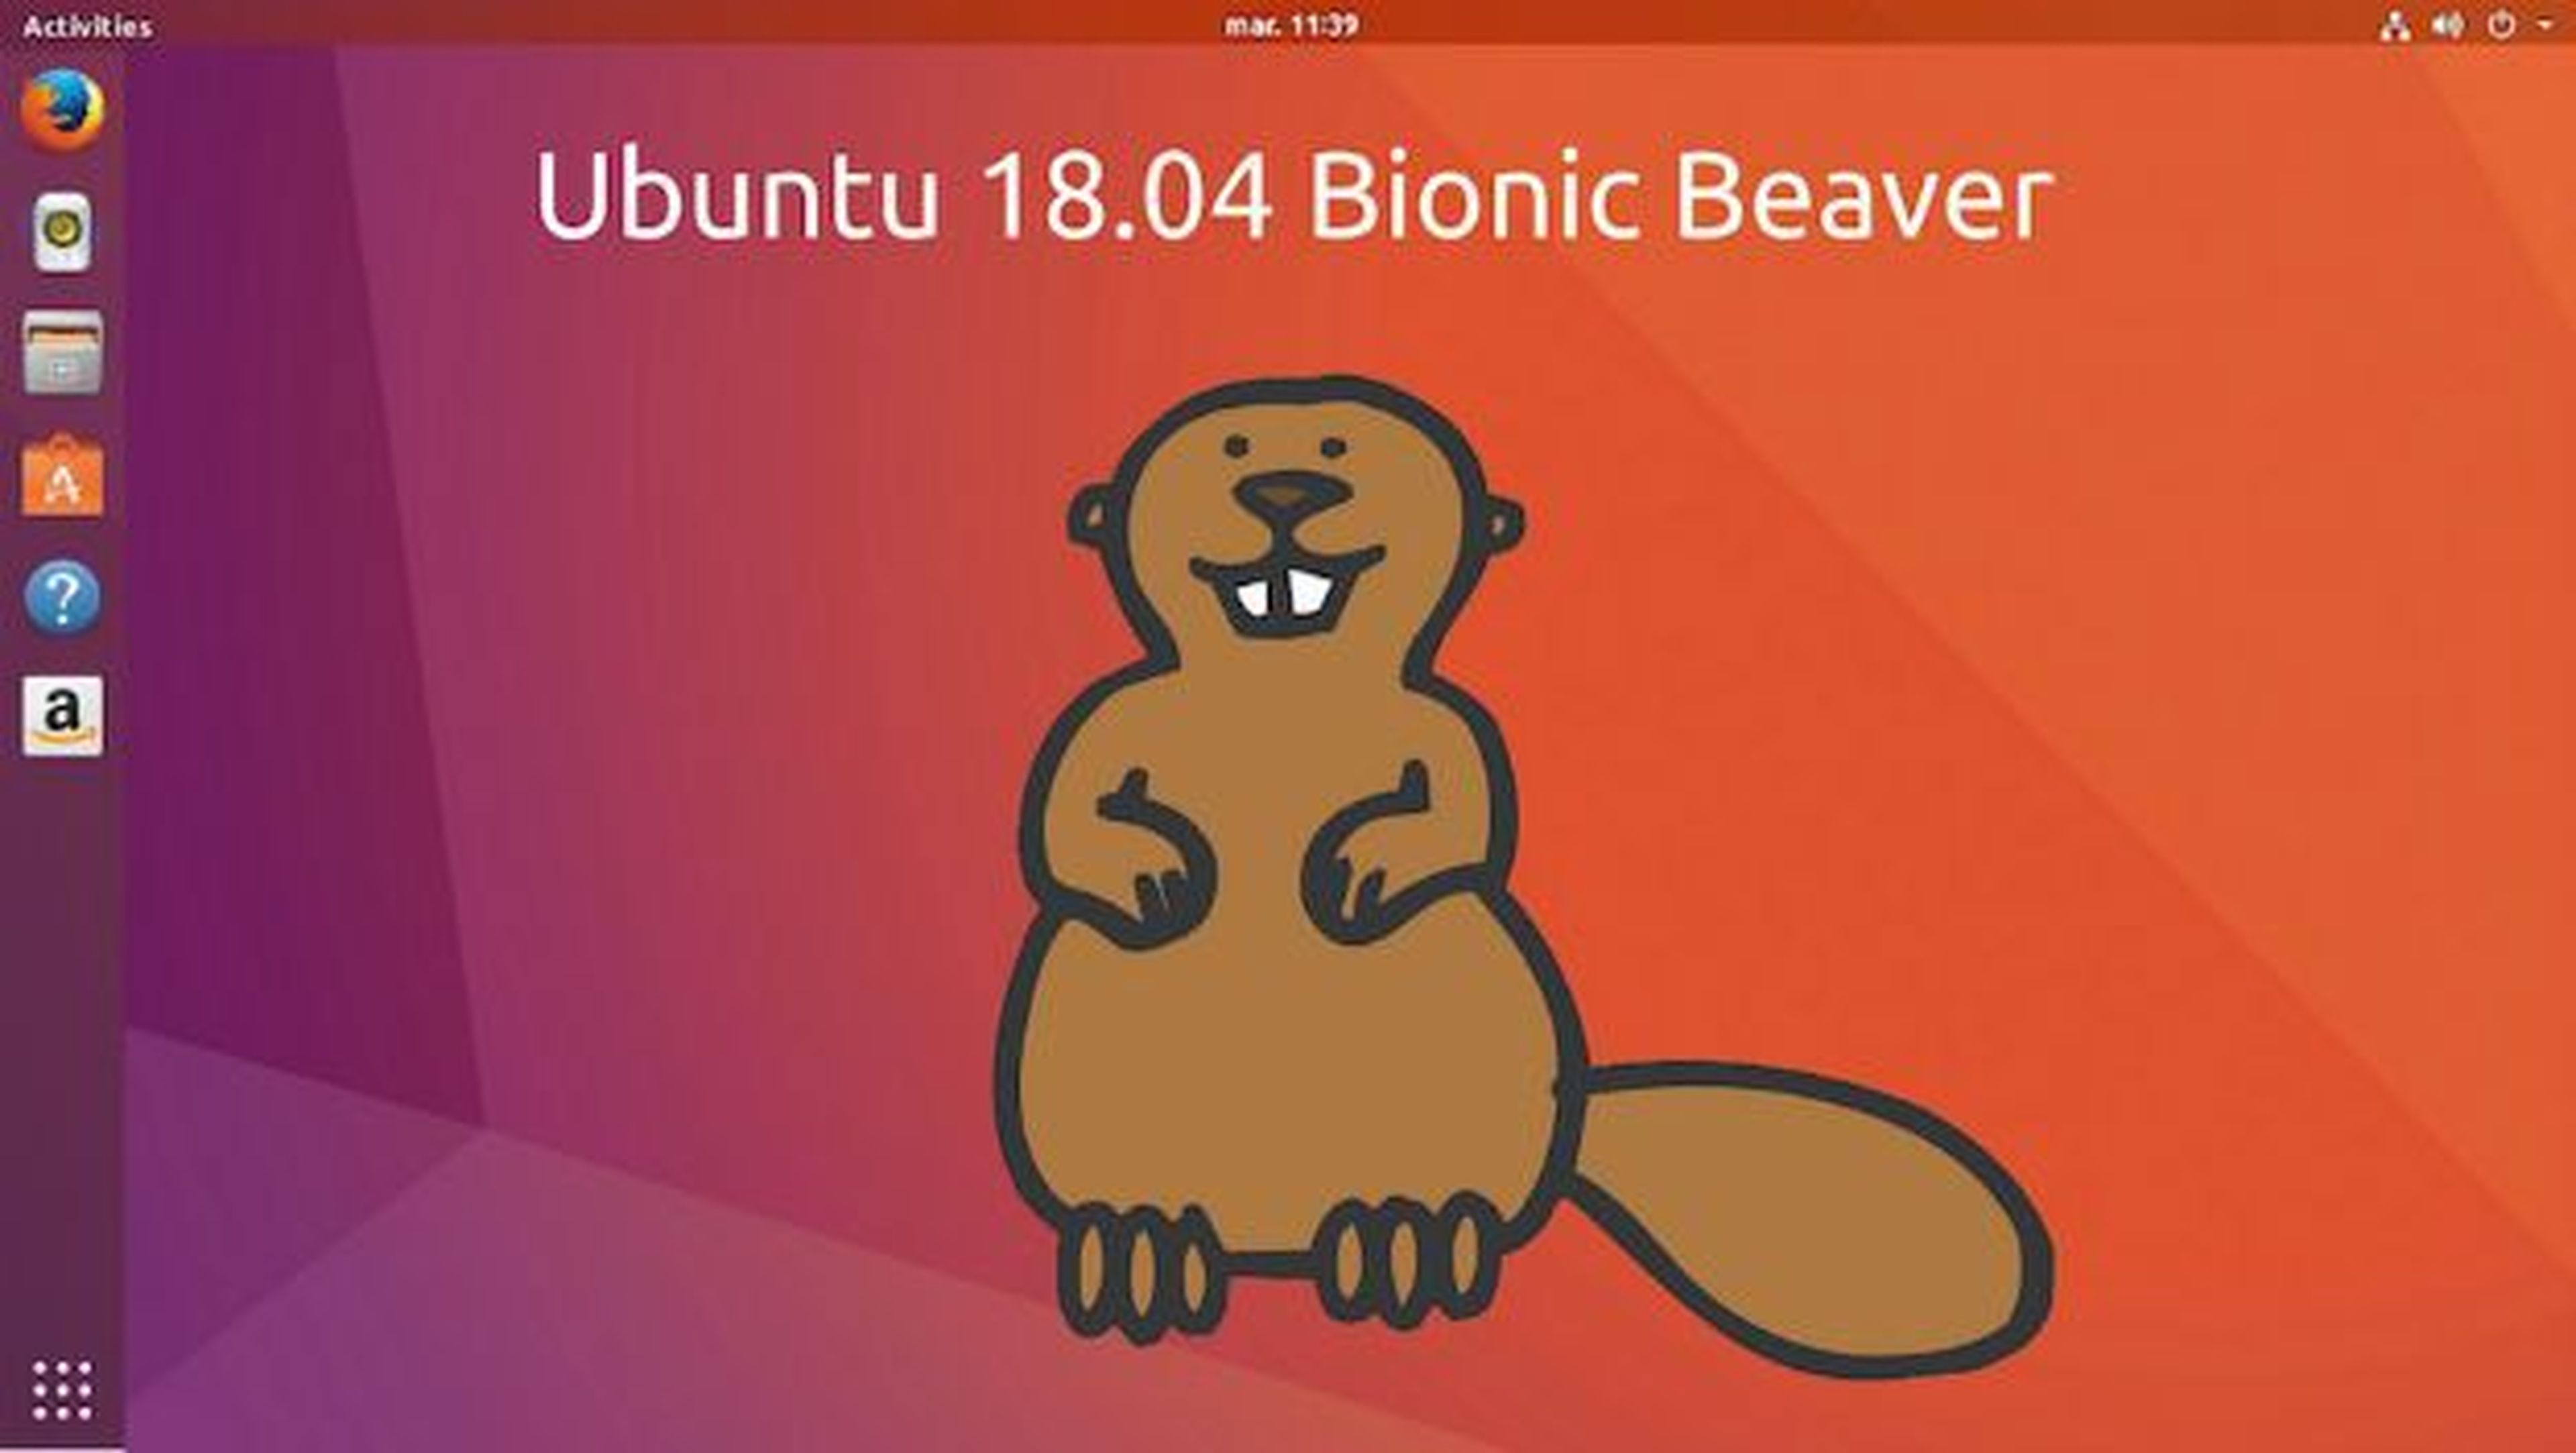 Fecha oficial de lanzamiento de Ubuntu 18.04 Bionic Beaver.